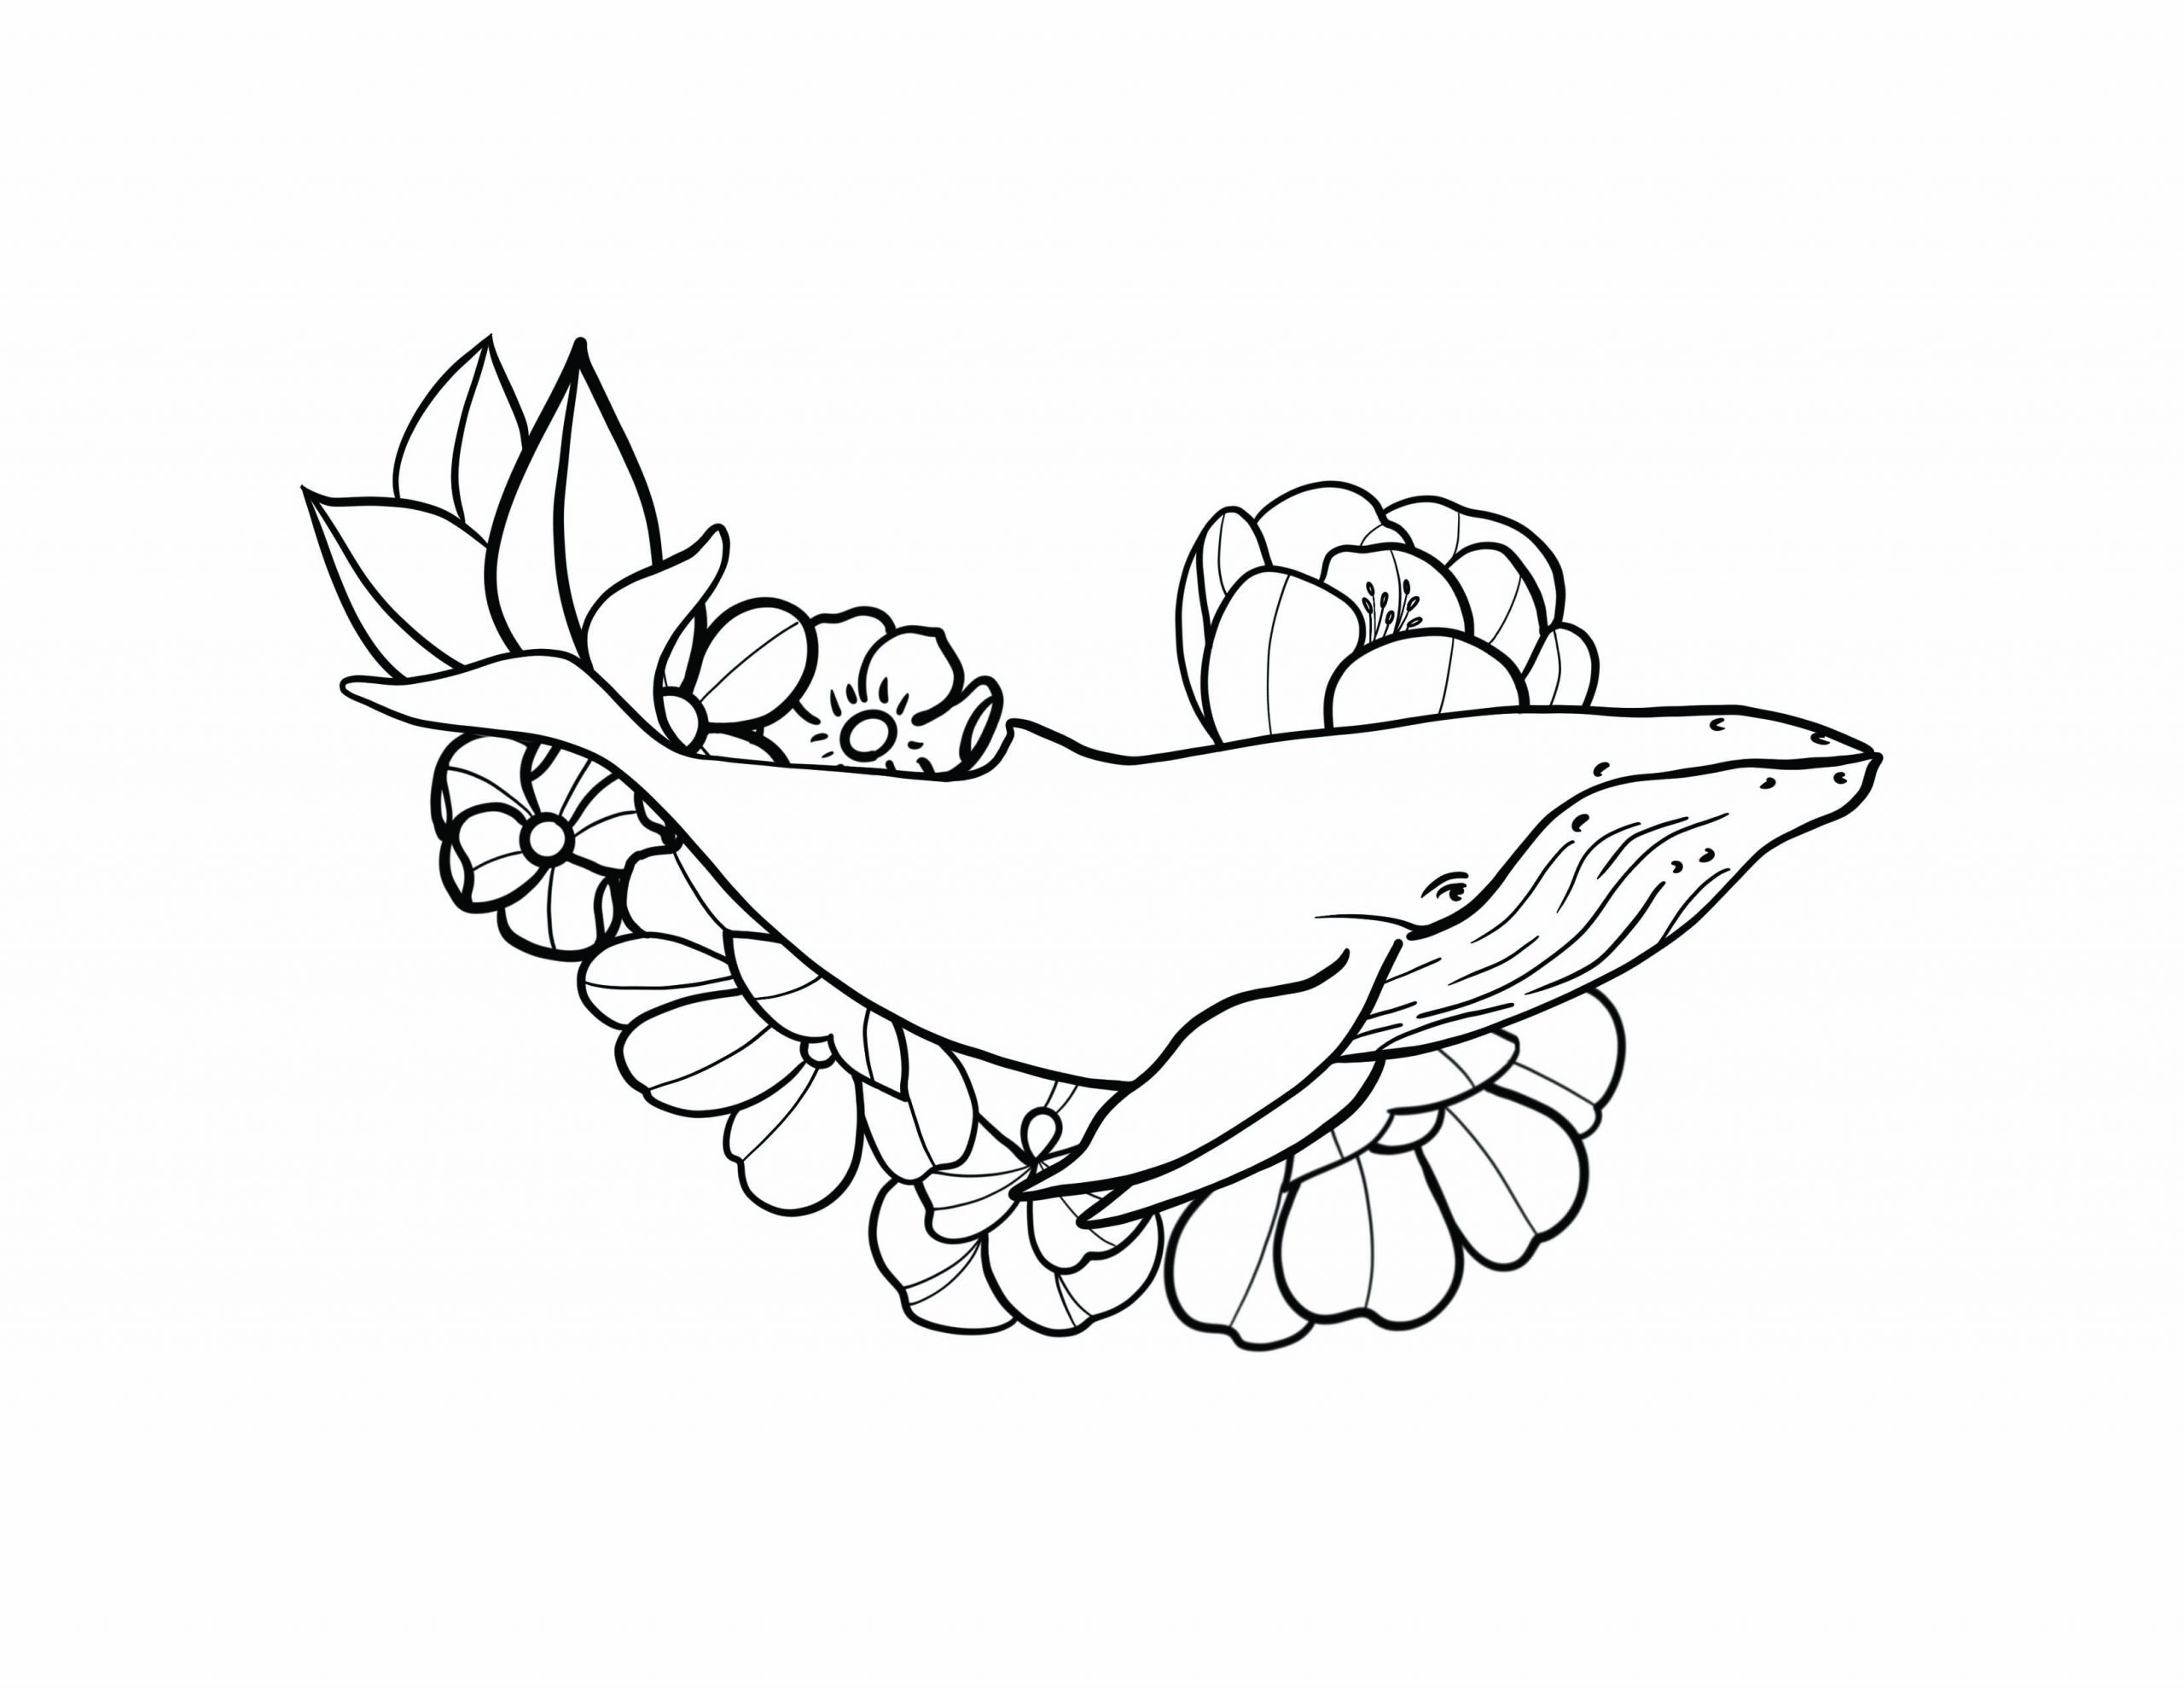 FREE Coloring Page: Humpback Whale Bouquet - SheetalColor.com